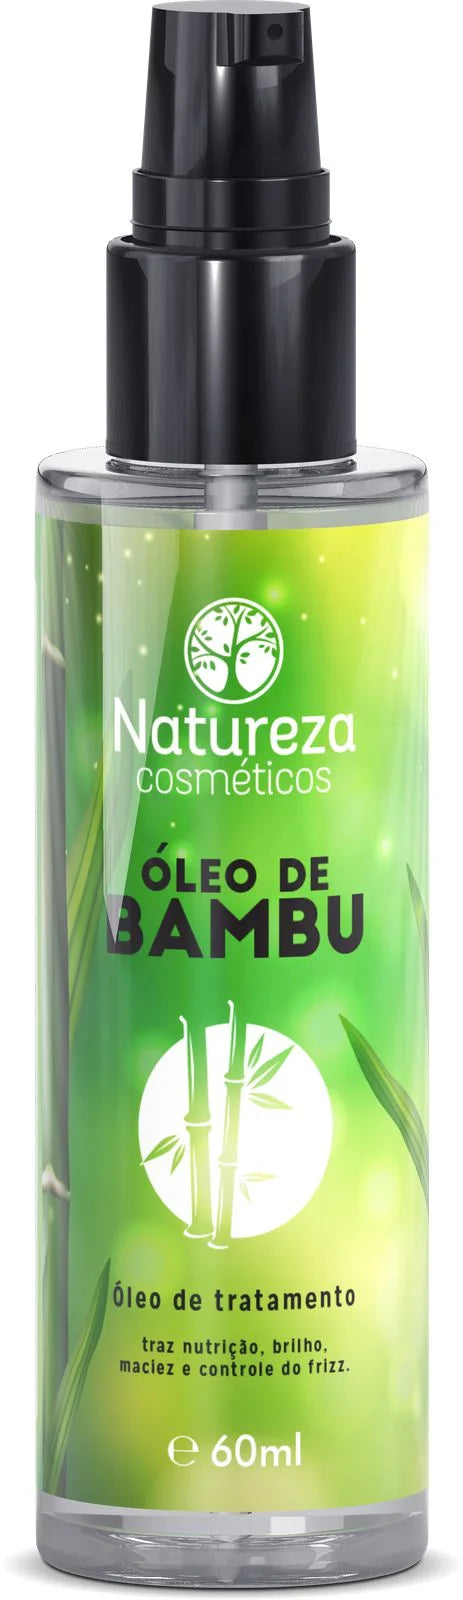 Bamboo Hair Oil (Natureza Cosmeticos - Oleo De Bambu)